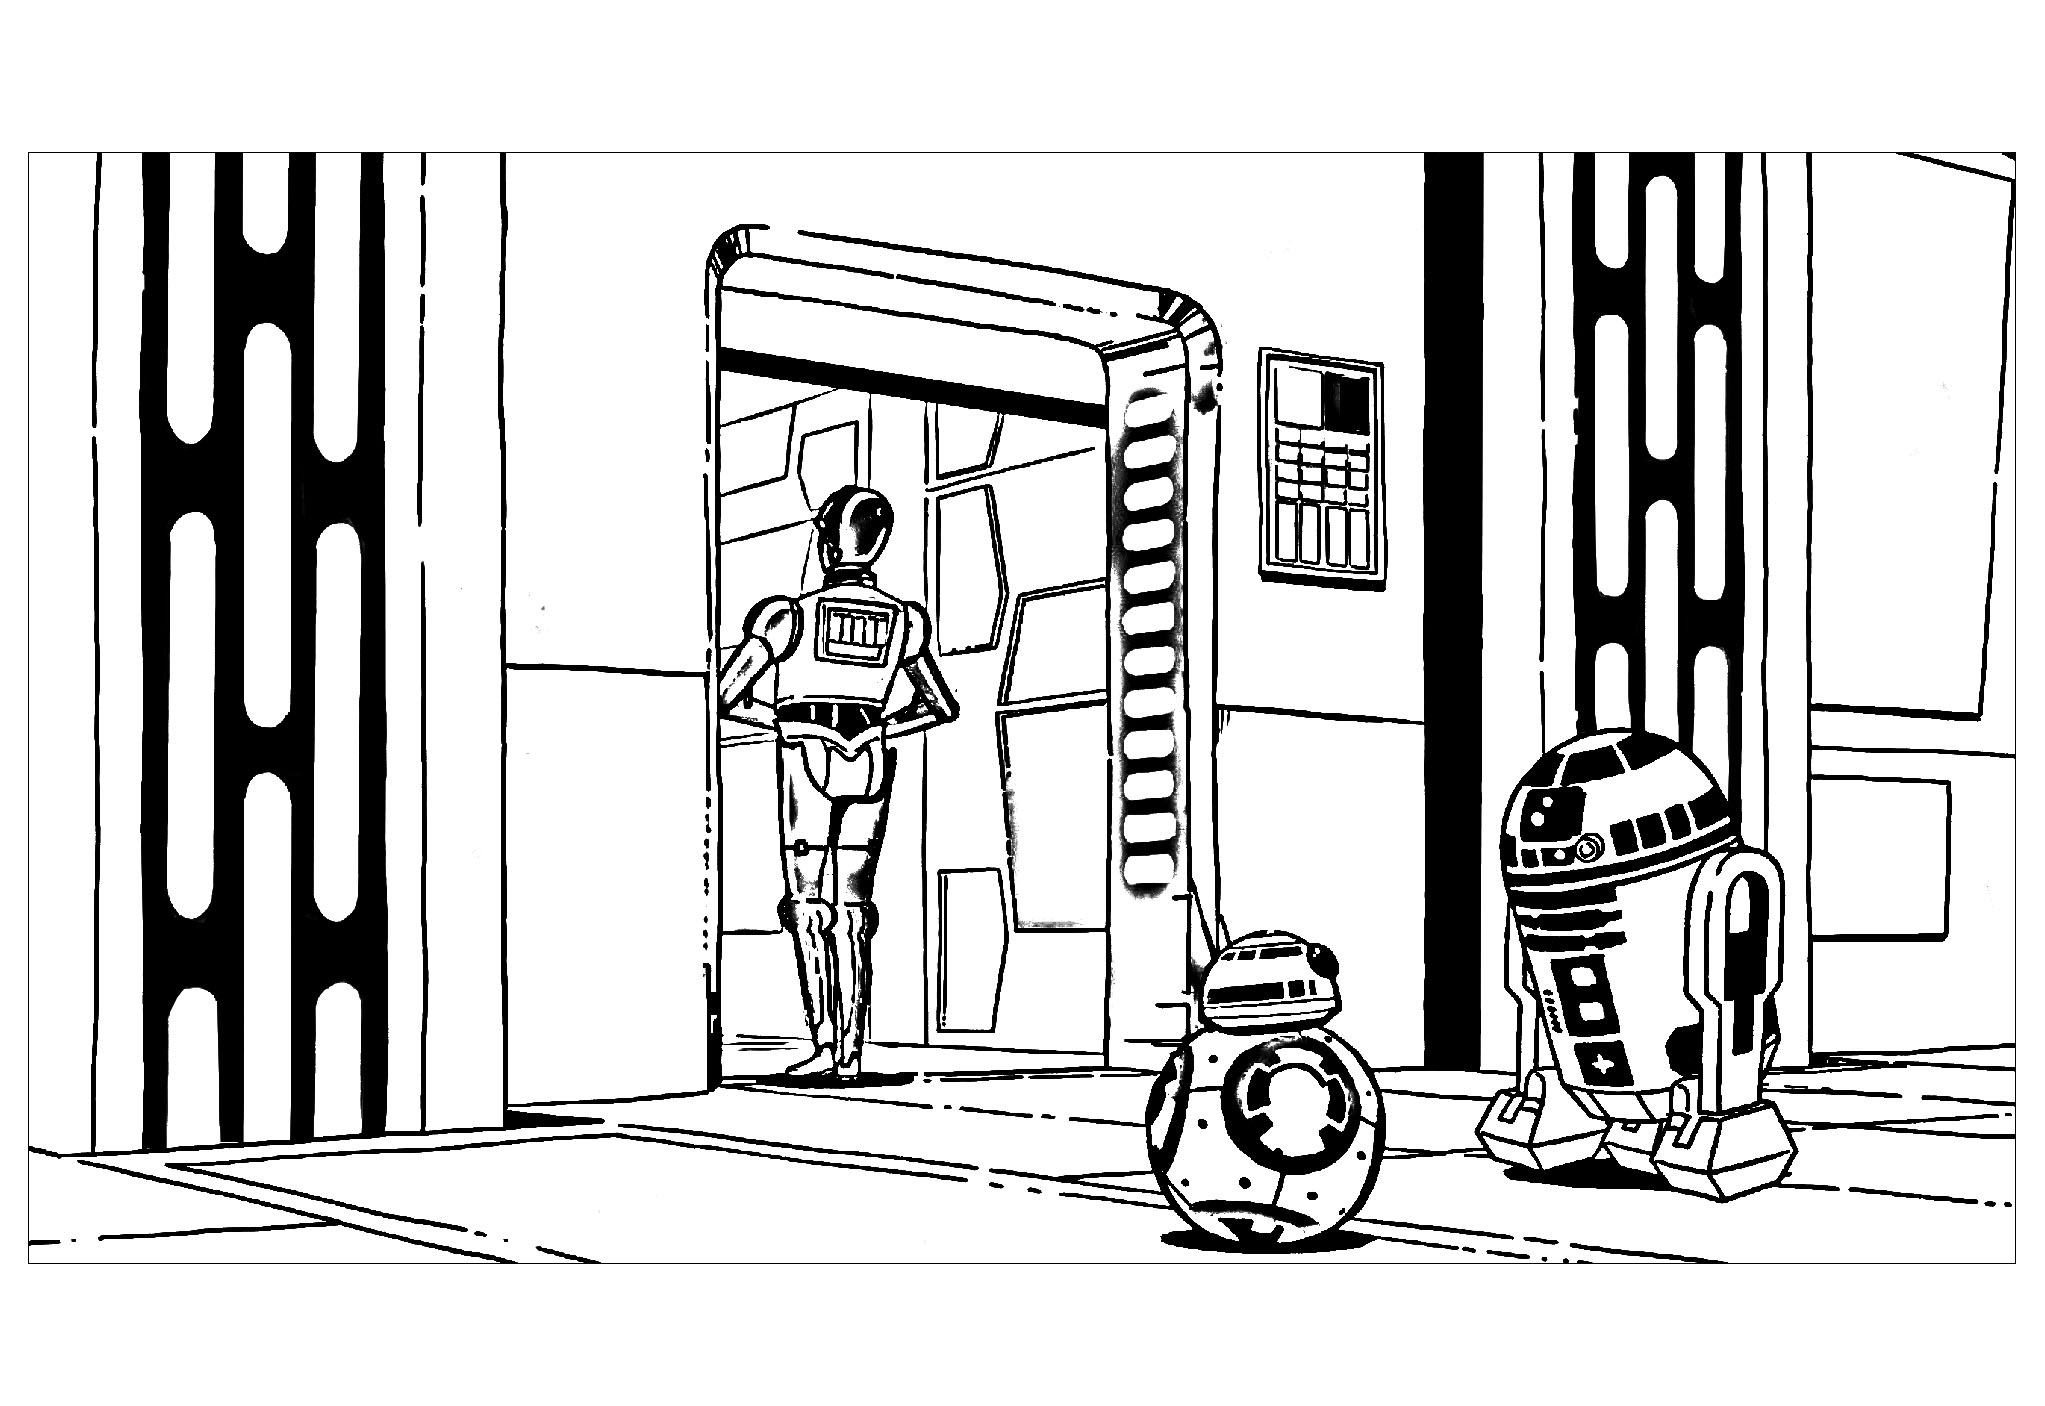 Coloriez les 3 robots les plus connus du monde Star Wars : C3PO, R2D2 et le petit dernier BB8 !